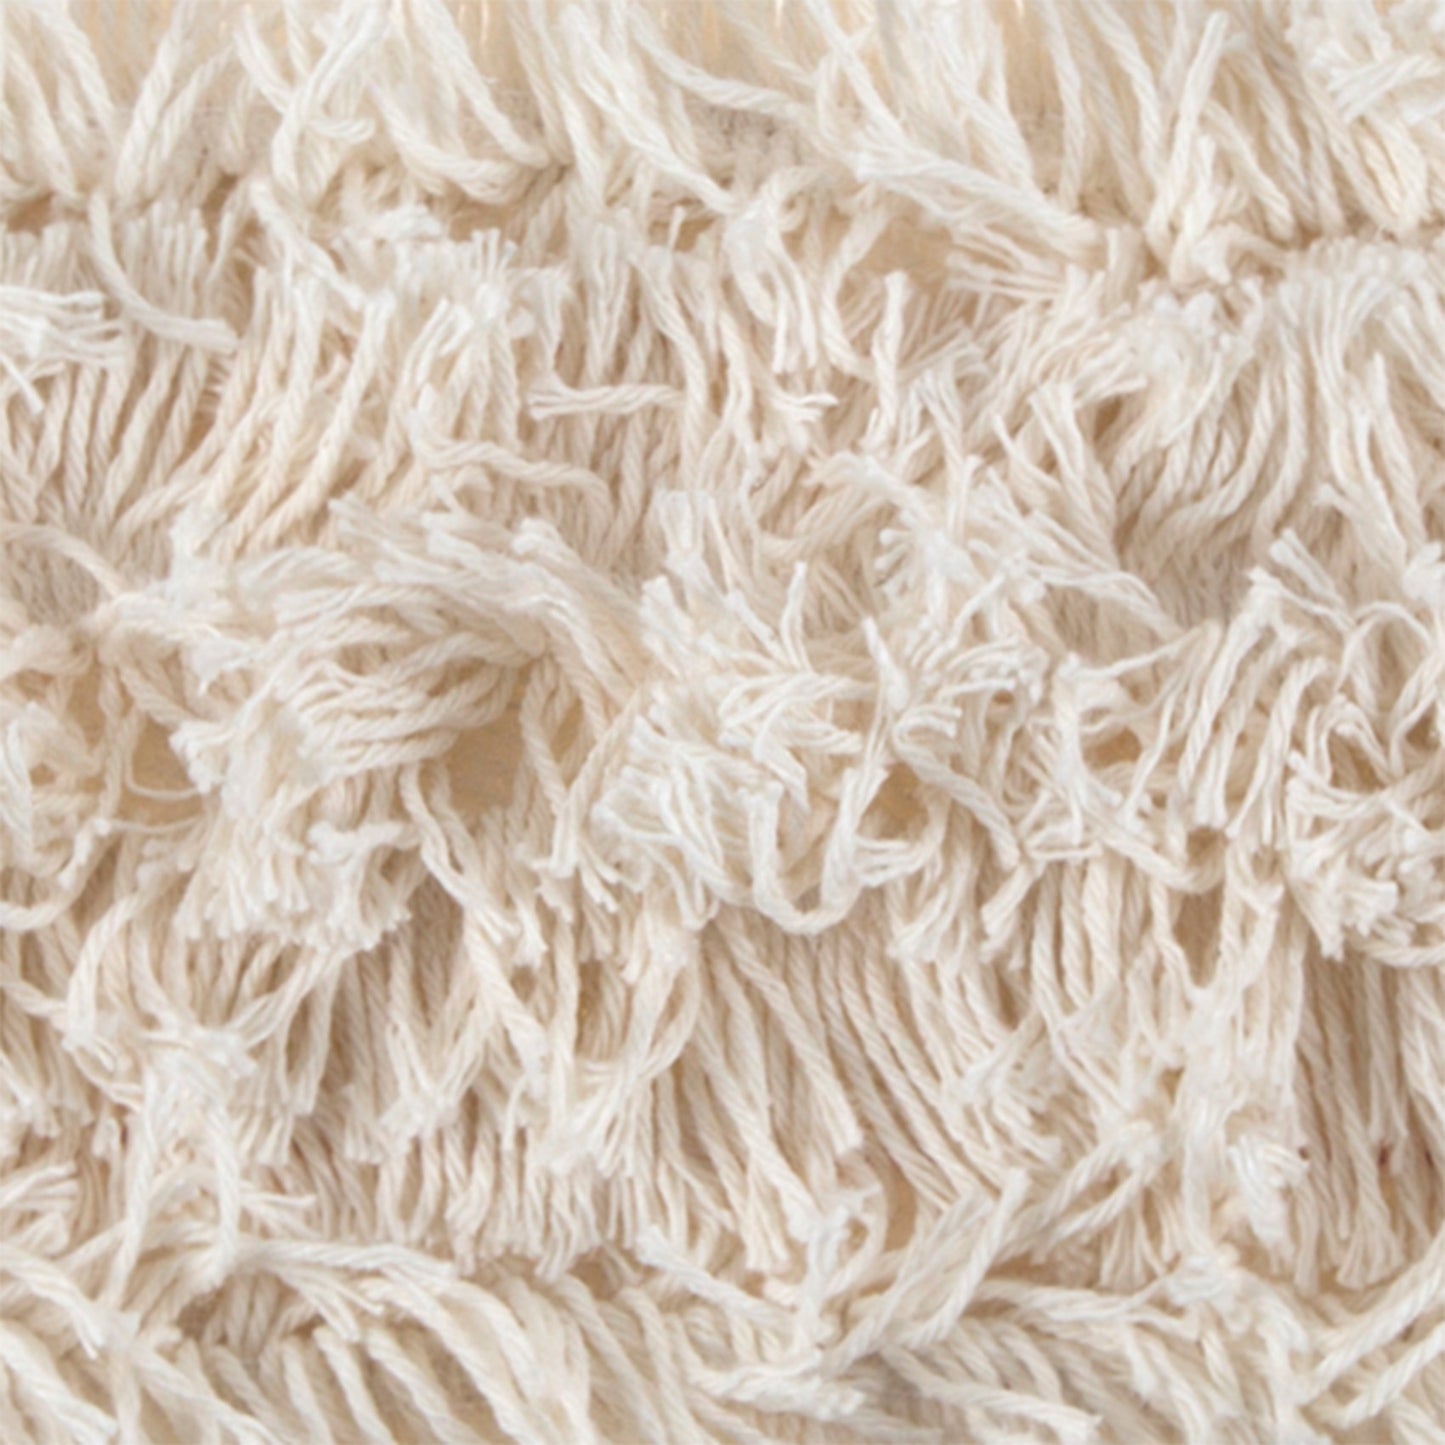 Mopa franja algodão cru com bolsos e suporte de algodão. Sistema de limpeza de piso com esfregões de poeira. Ideal para qualquer tipo de sujidade ou superfície. 